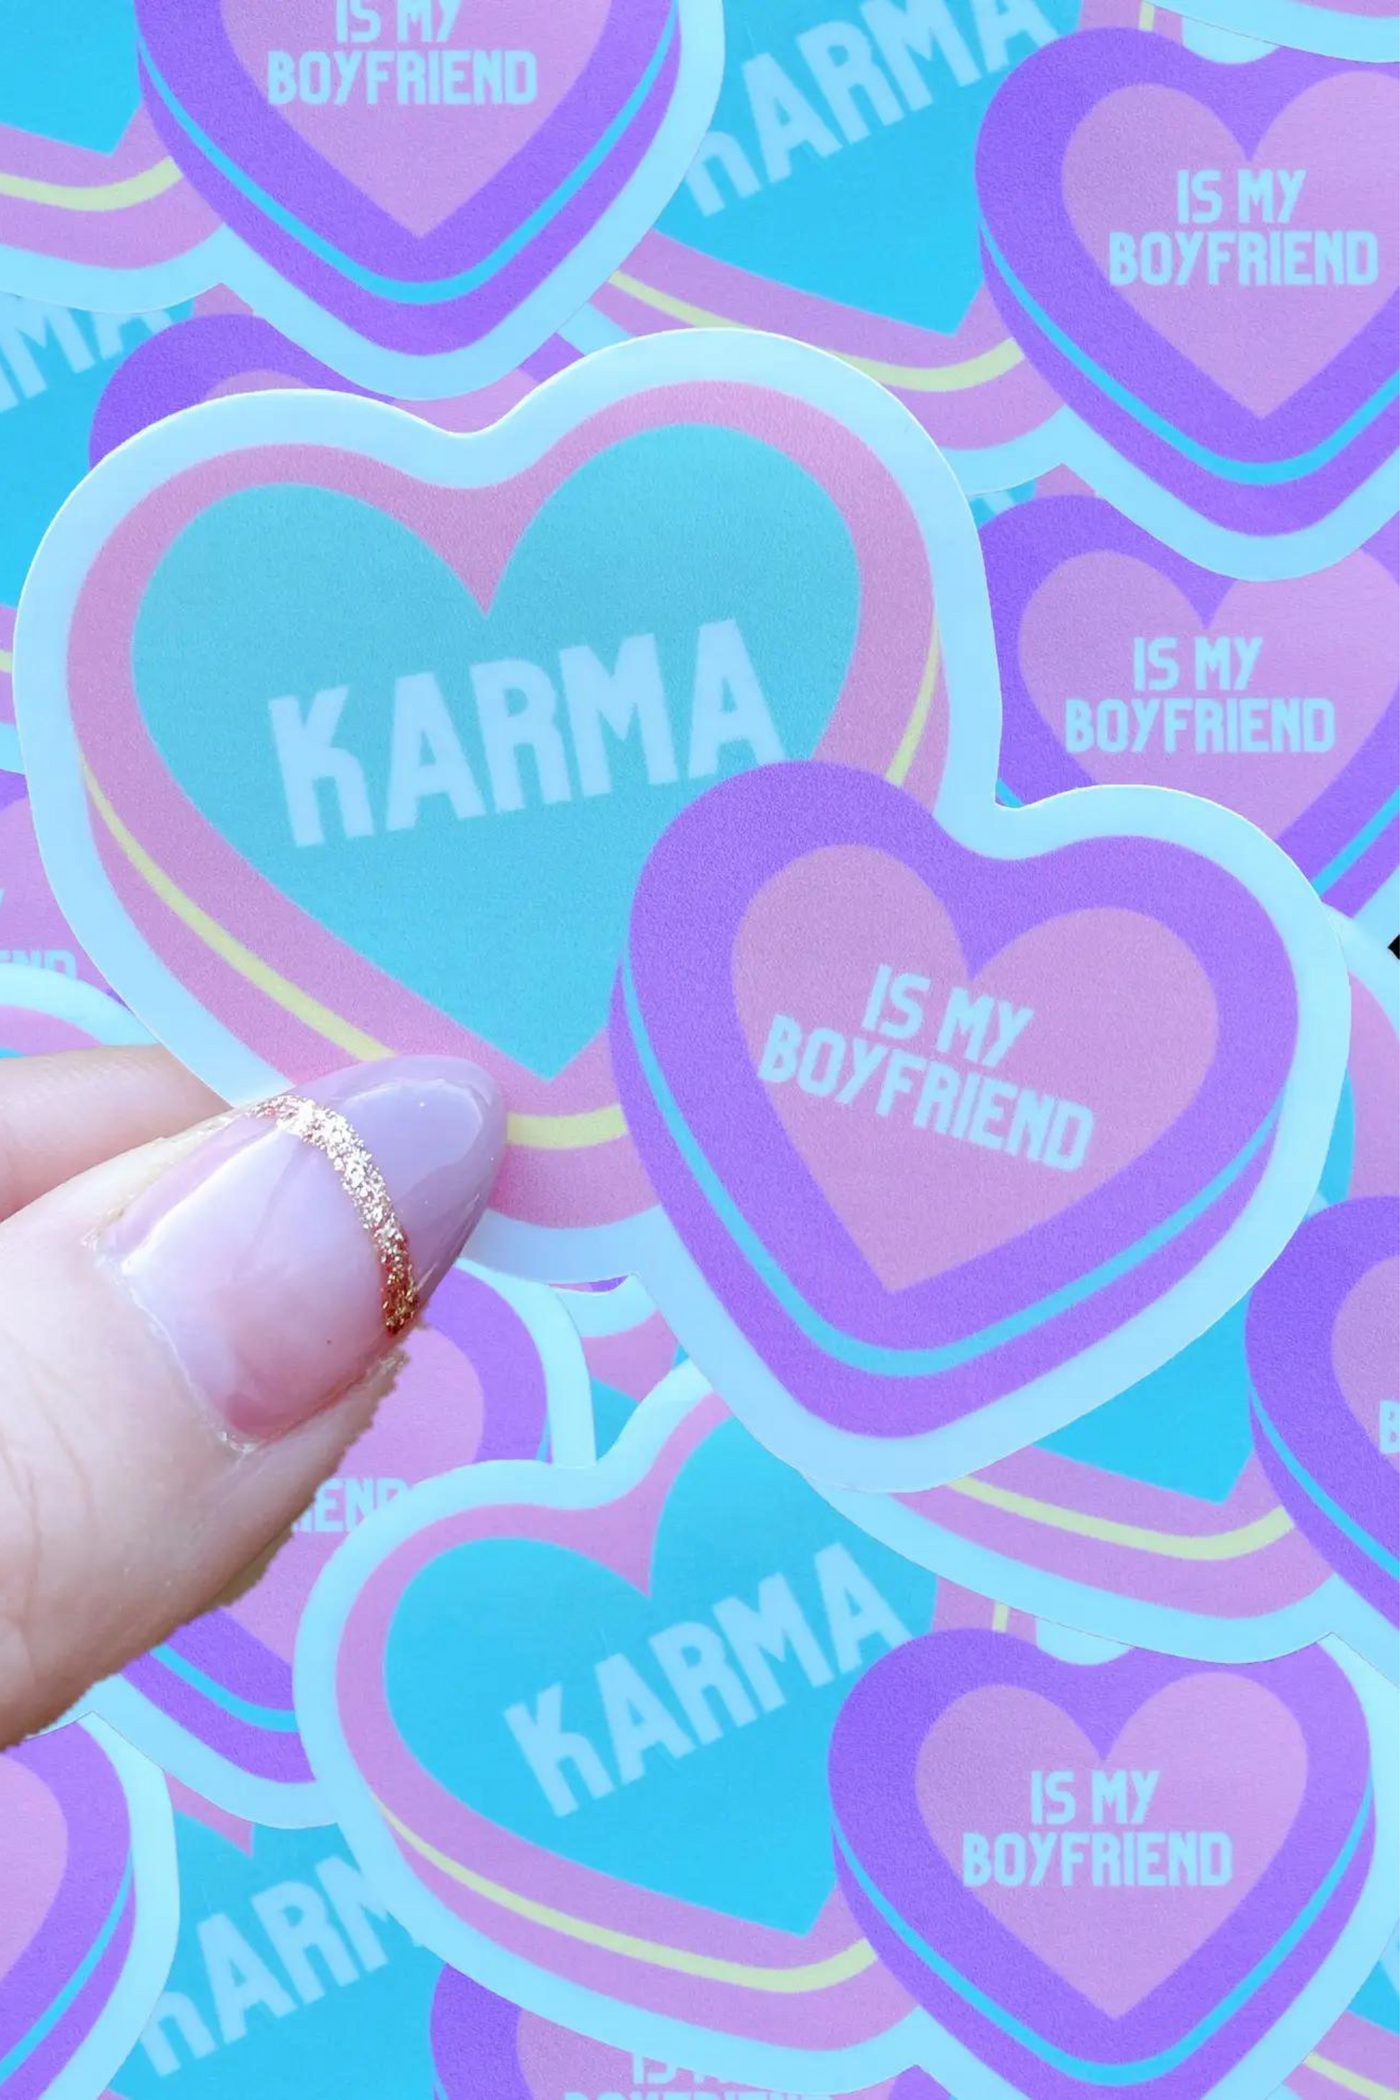 Karma is My Boyfriend Sticker